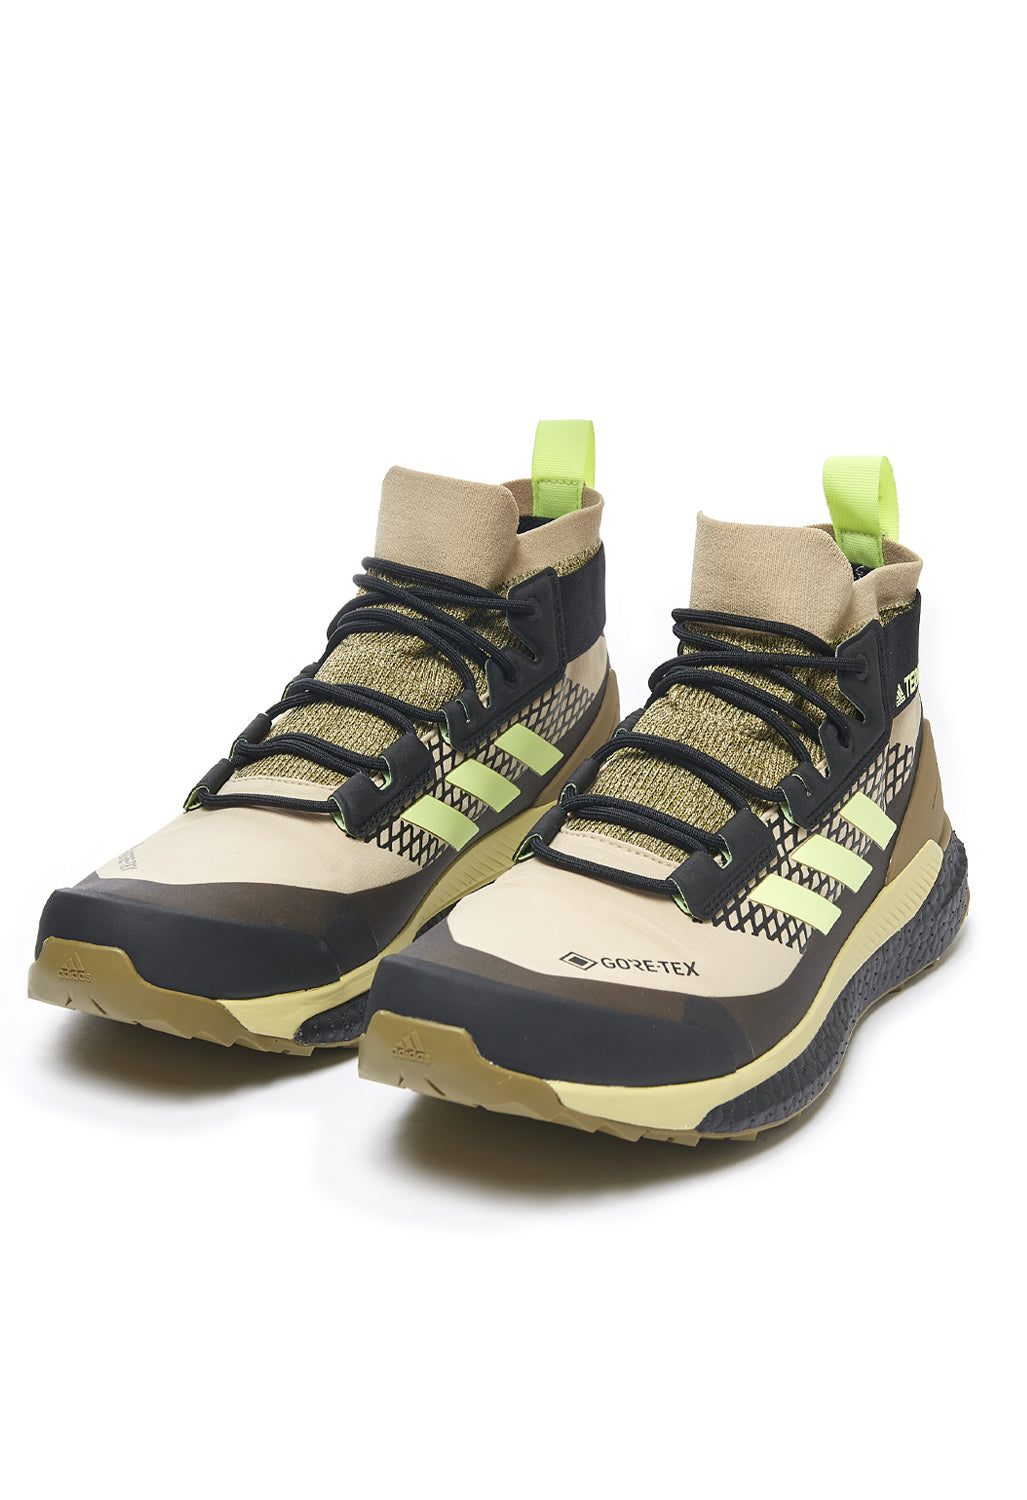 adidas Terrex Free Hiker GORE-TEX Men's Boots - Savannah/Hi-Res Yellow/Core Black